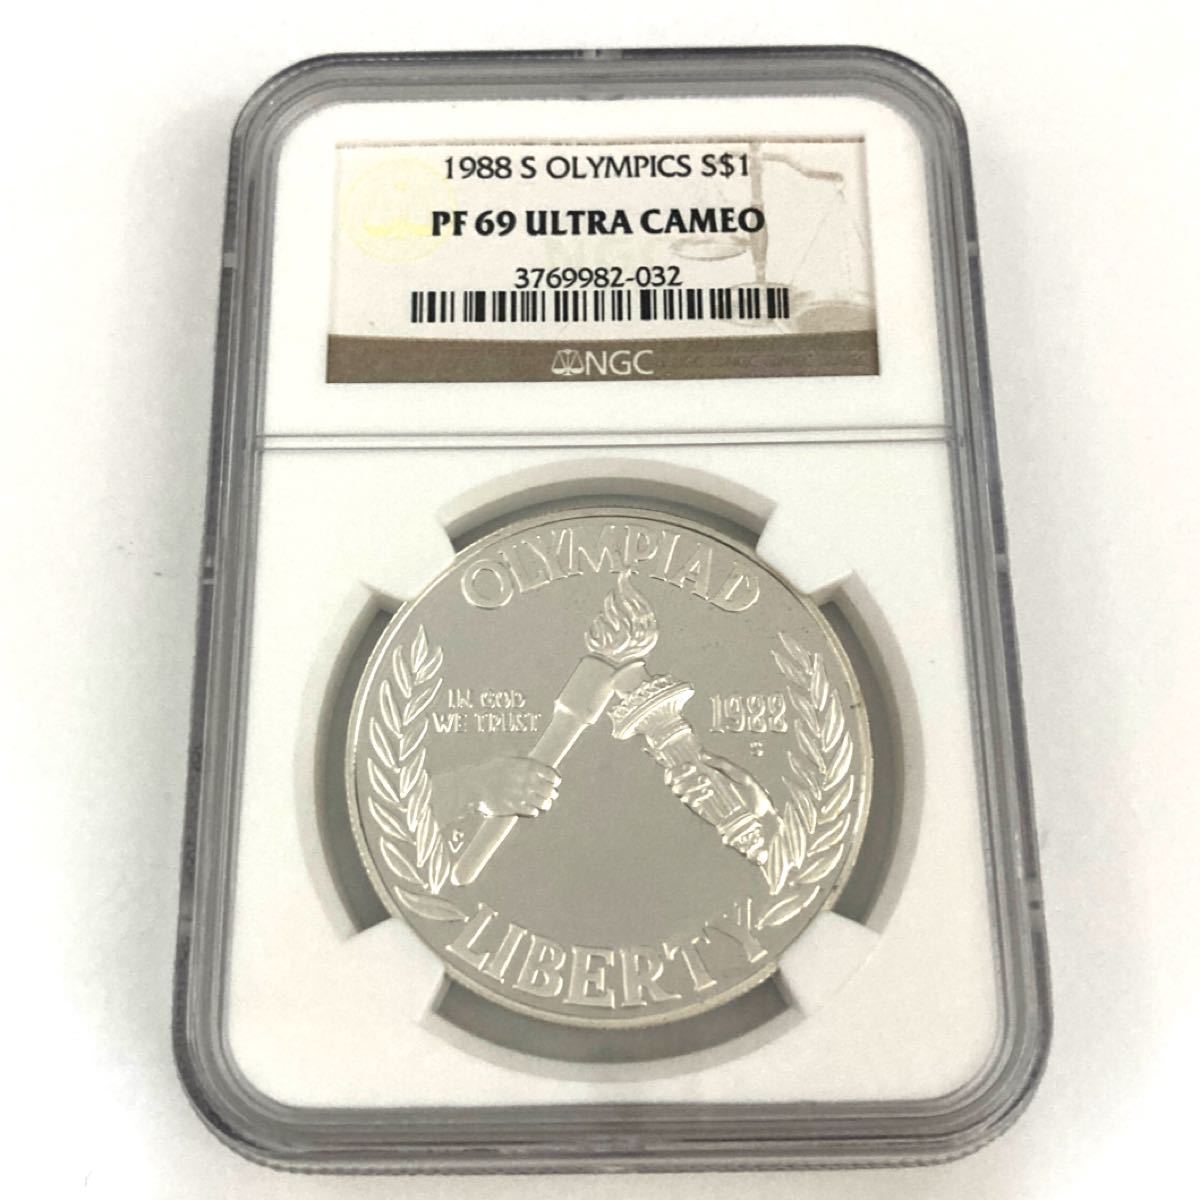 1988 S オリンピック 1ドル 記念銀貨 NGC PF69 UC